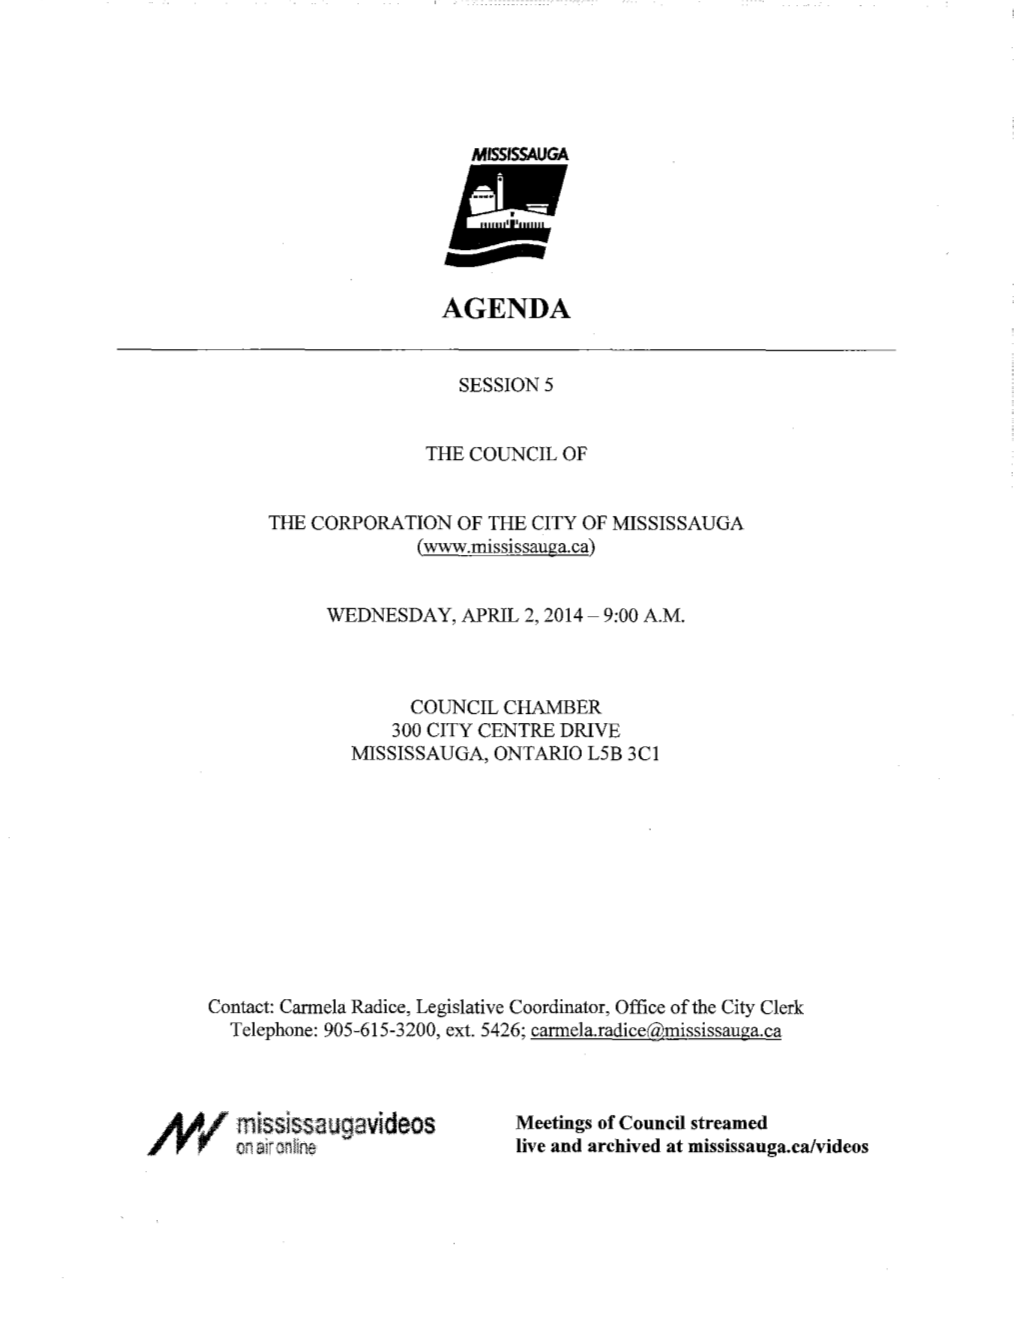 Council Agenda – April 2, 2014